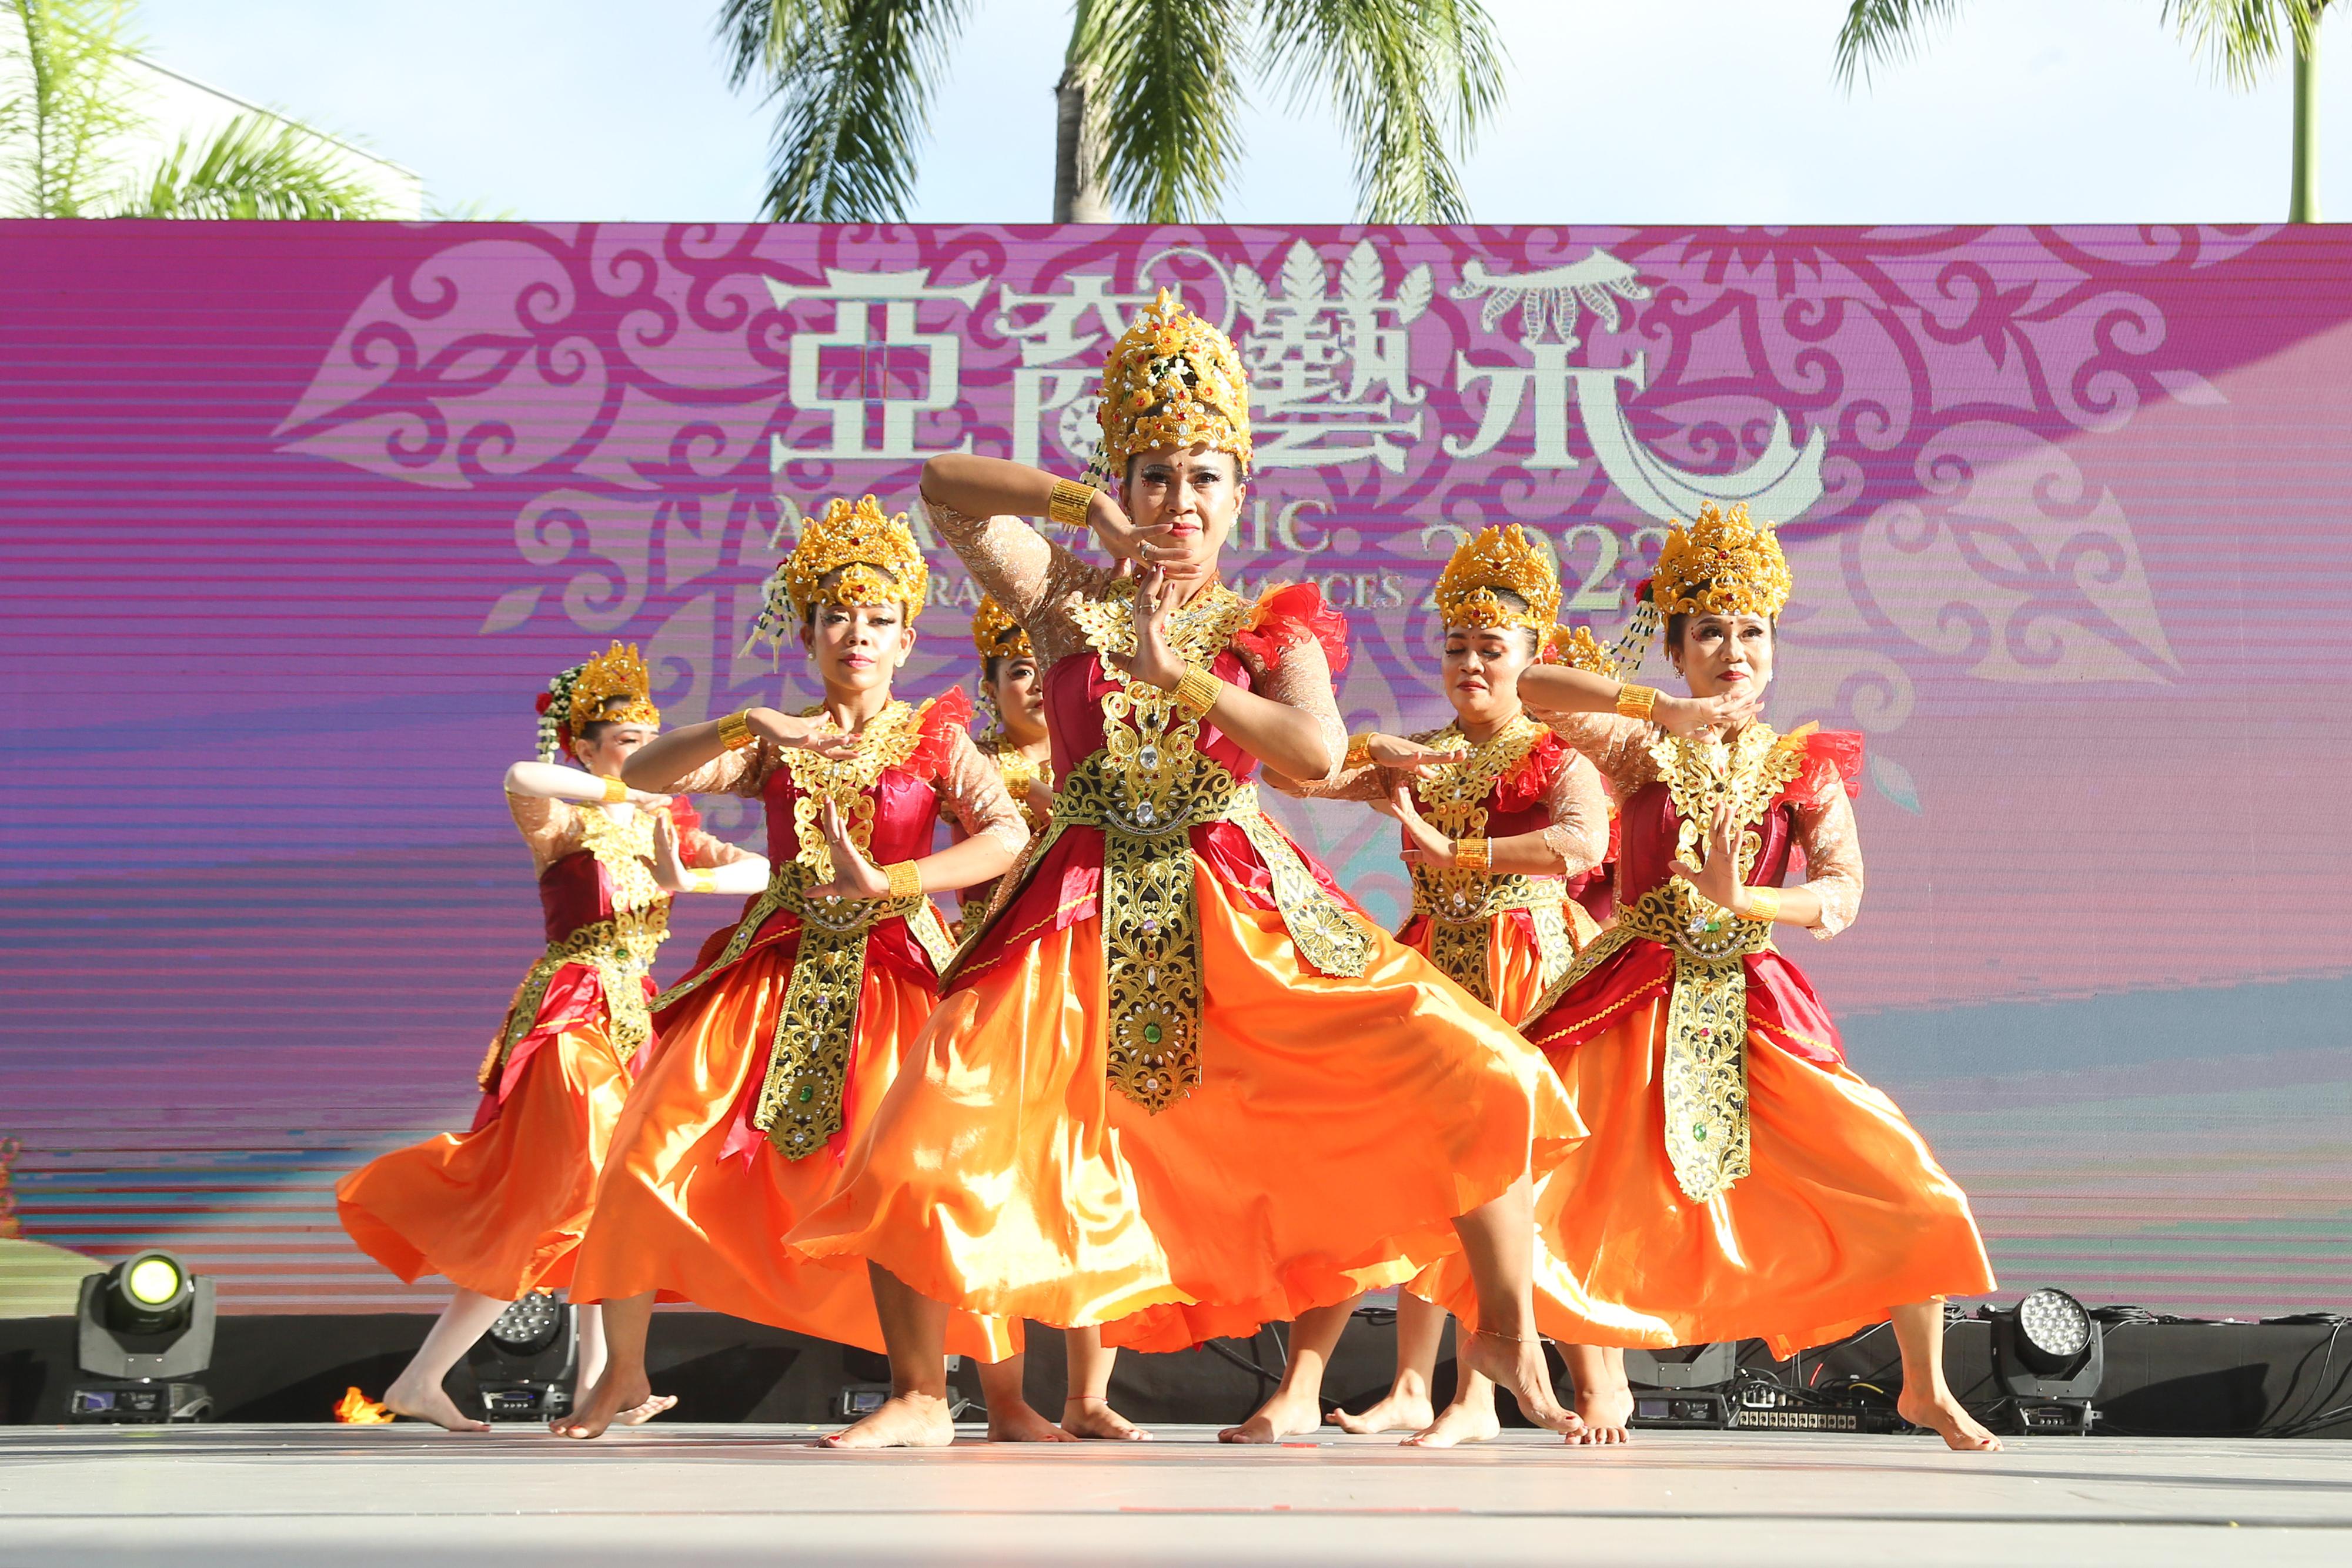 康樂及文化事務署今日（十一月十二日）下午在香港文化中心露天廣場舉行「亞裔藝采」，透過豐富的民族表演、民族服裝頭飾展示和周邊活動，展現亞洲各地的文化和演藝才華。圖示印尼的舞蹈表演。